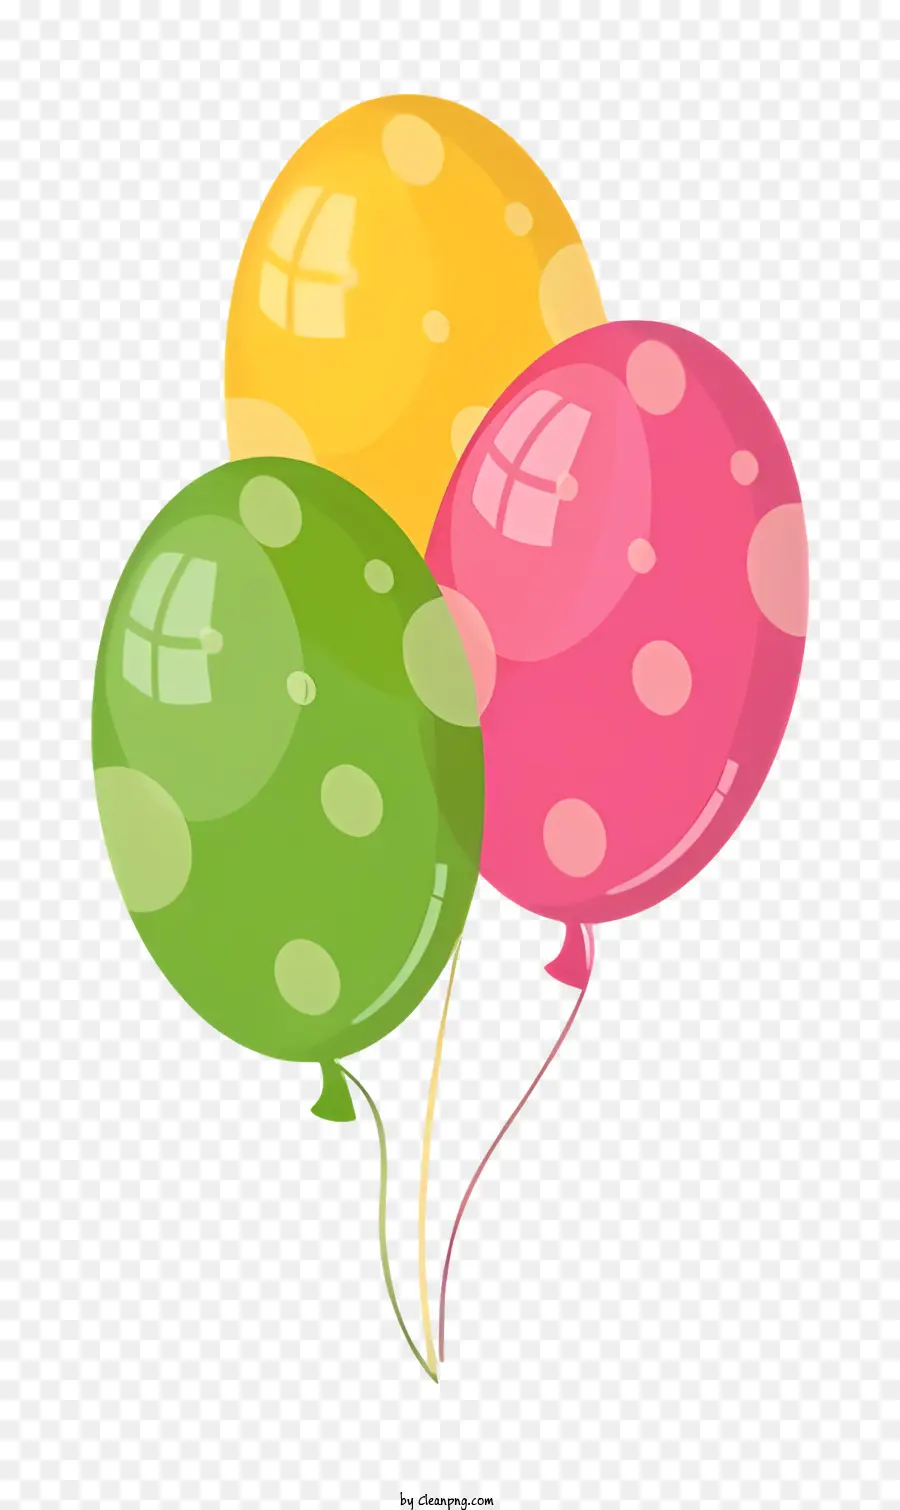 palloncini palloncini colorati palloncini a pois palloncini galleggianti in palloncini legati - Palloncini colorati legati con stringa sullo sfondo nero